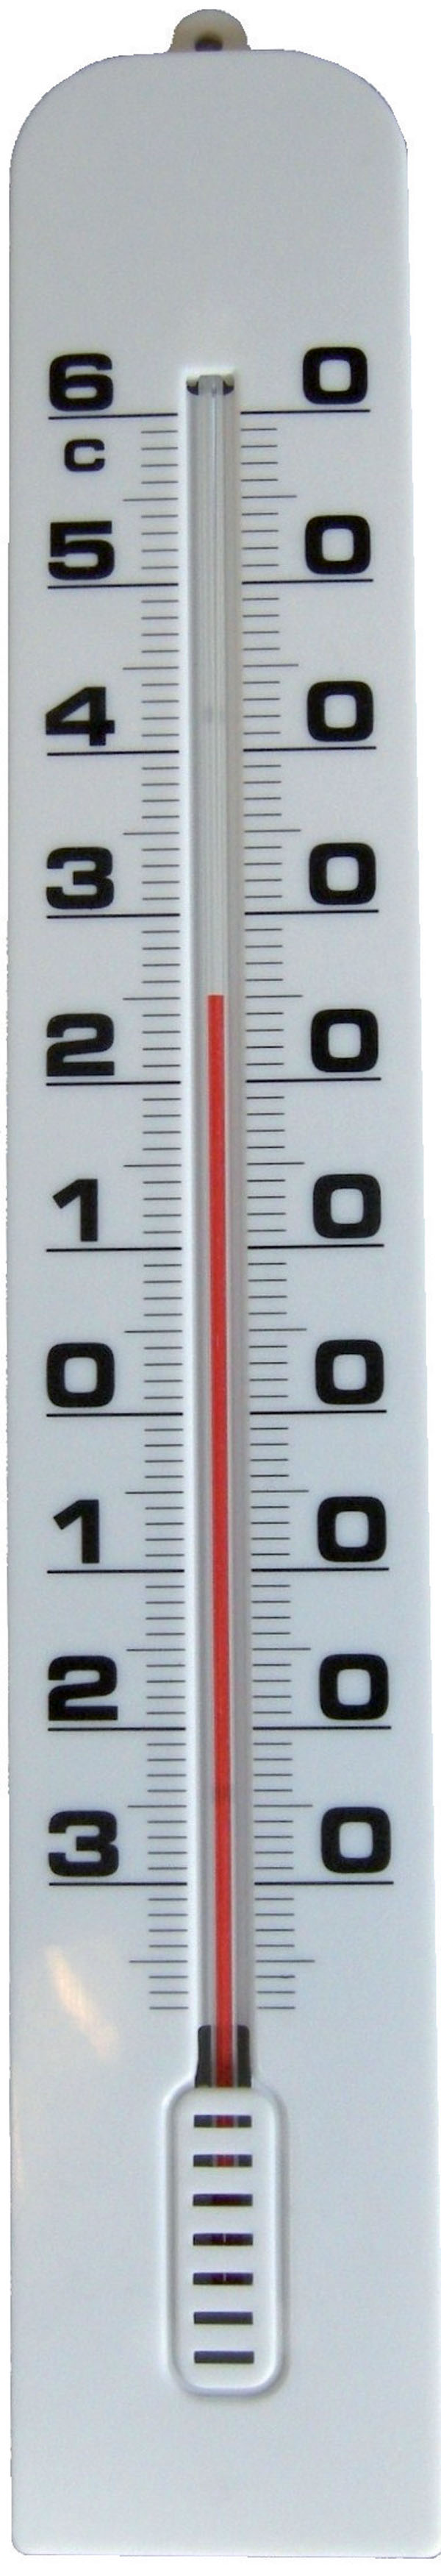 Grand thermomètre extérieur 380 mm de long - Thermomètre mural pour usage  int